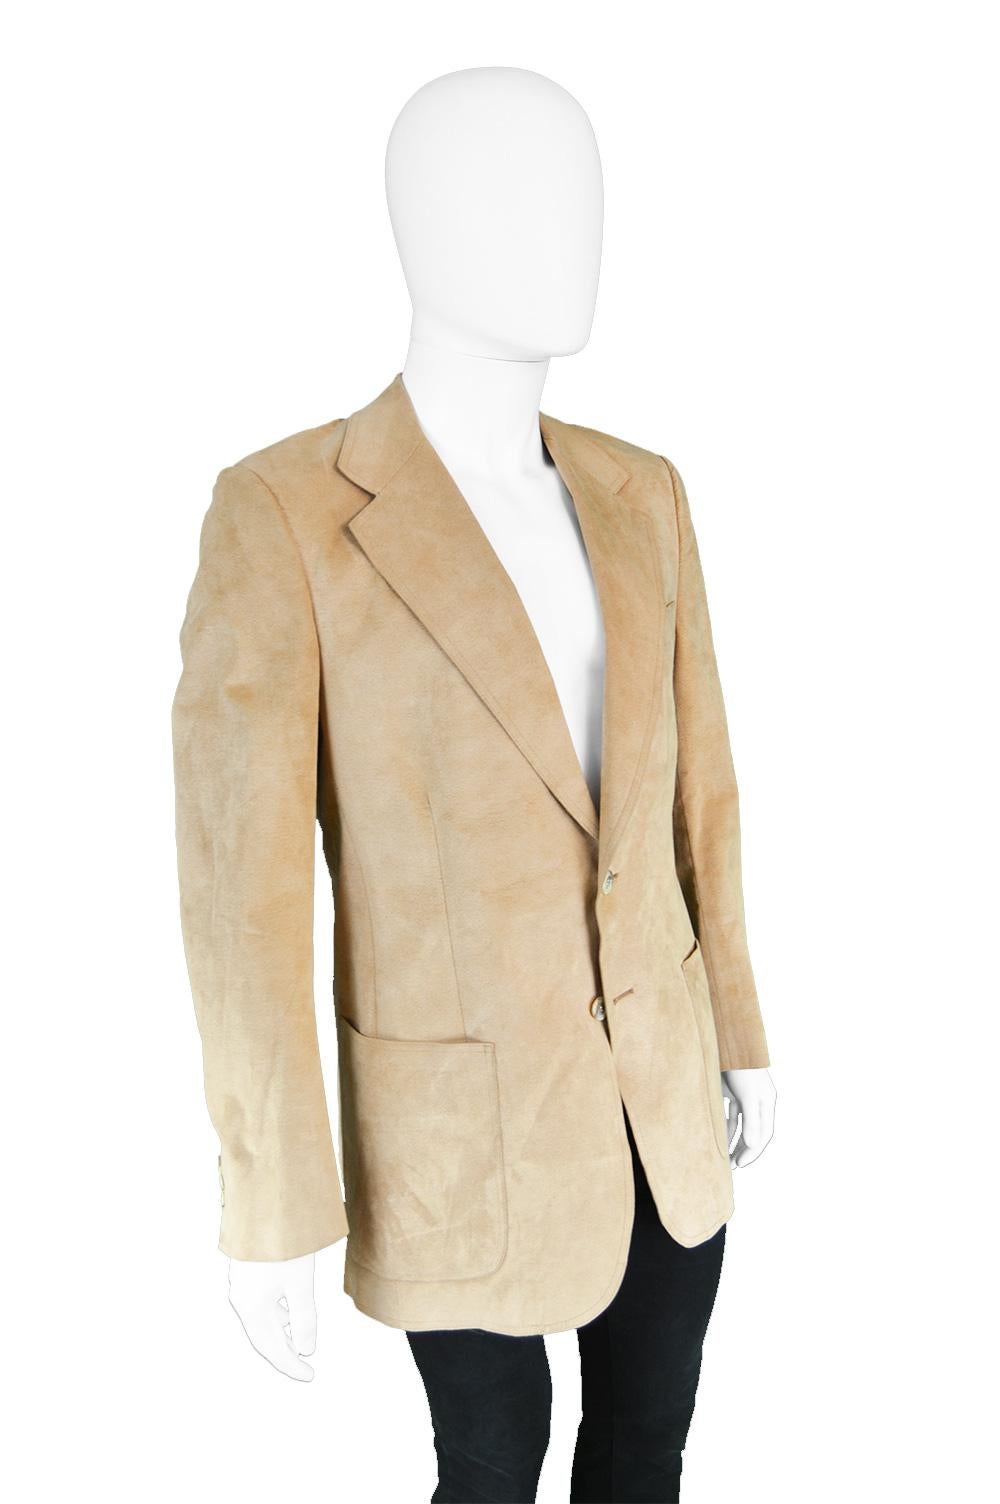 Halston for I. Magnin Men's Vintage 'Halsuede' Brown Blazer Jacket, 1970s 1